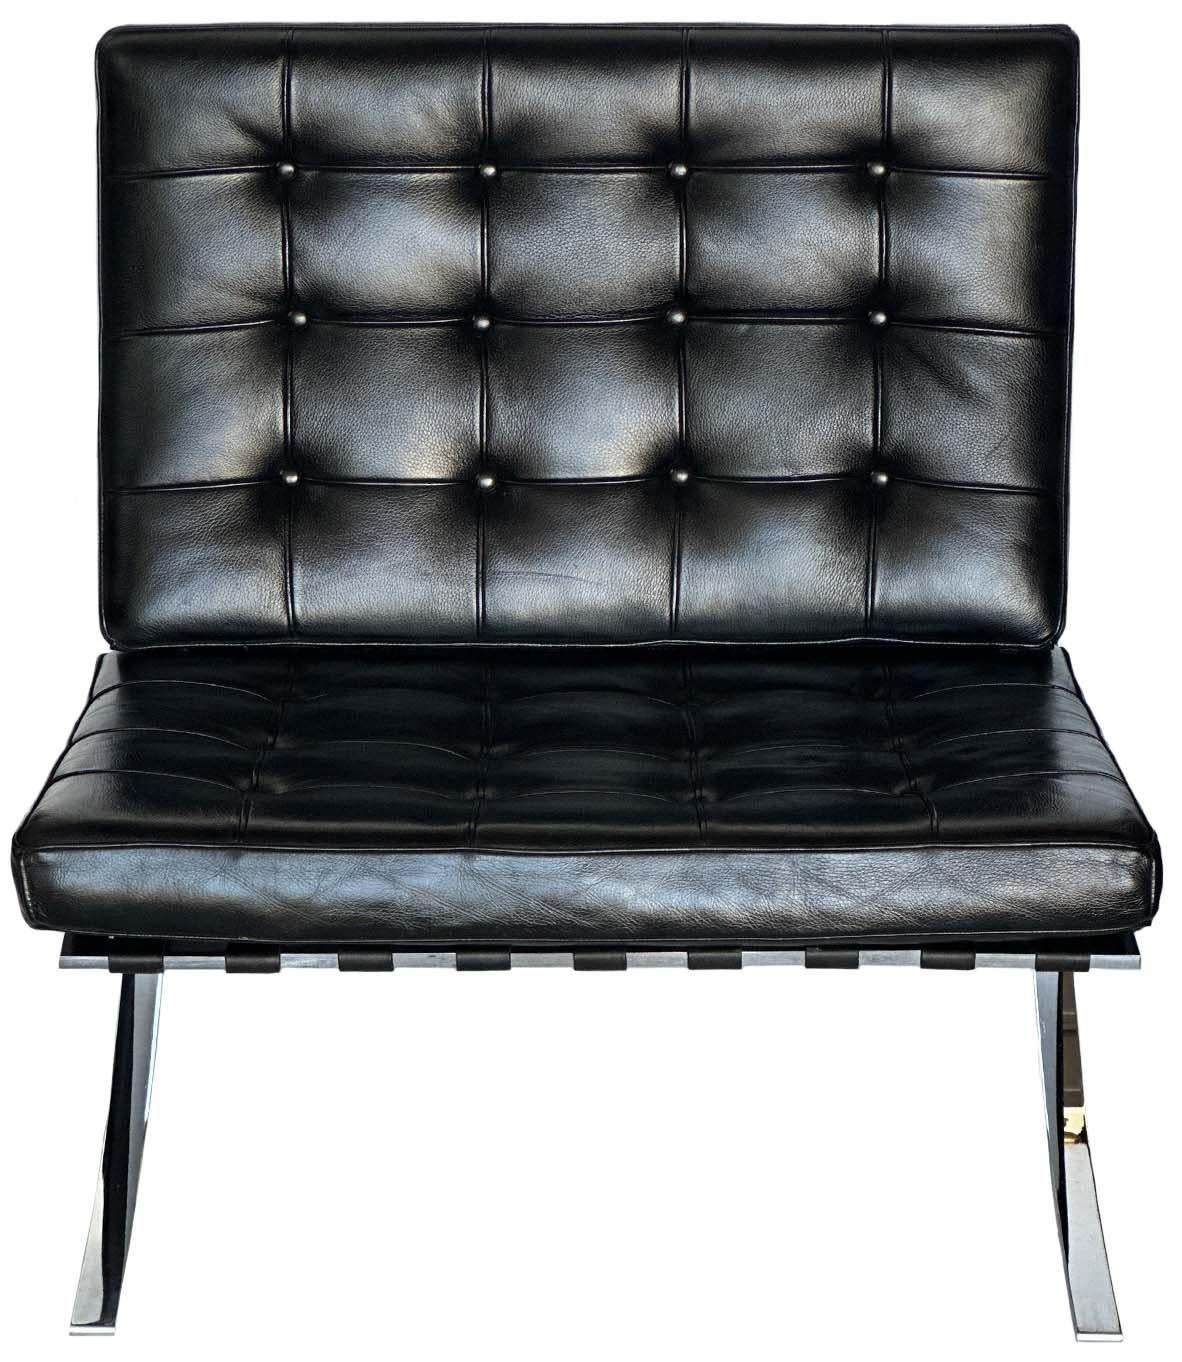 Ein Paar ikonischer Barcelona-Stühle im Vintage-Stil mit hochwertigen schwarzen Lederkissen auf einem soliden Chromgestell. Hergestellt in Italien, ca. 1970er Jahre. Auf einer Seite des Rahmens ist 